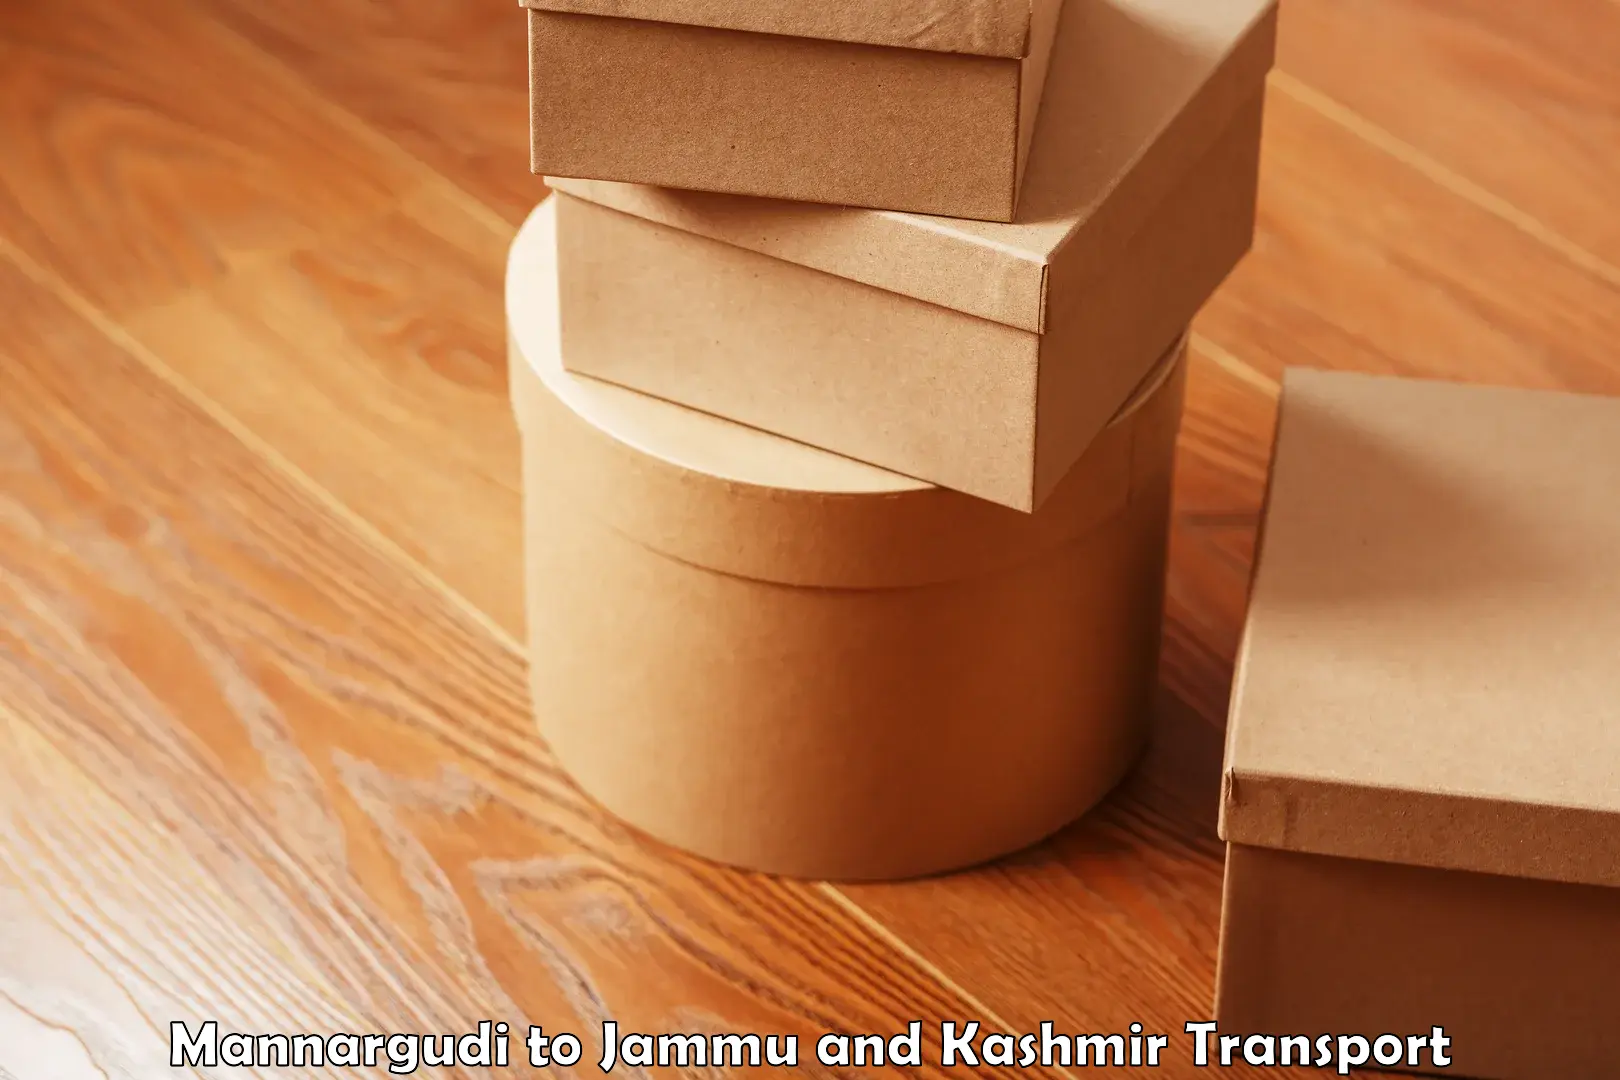 Parcel transport services Mannargudi to Jammu and Kashmir